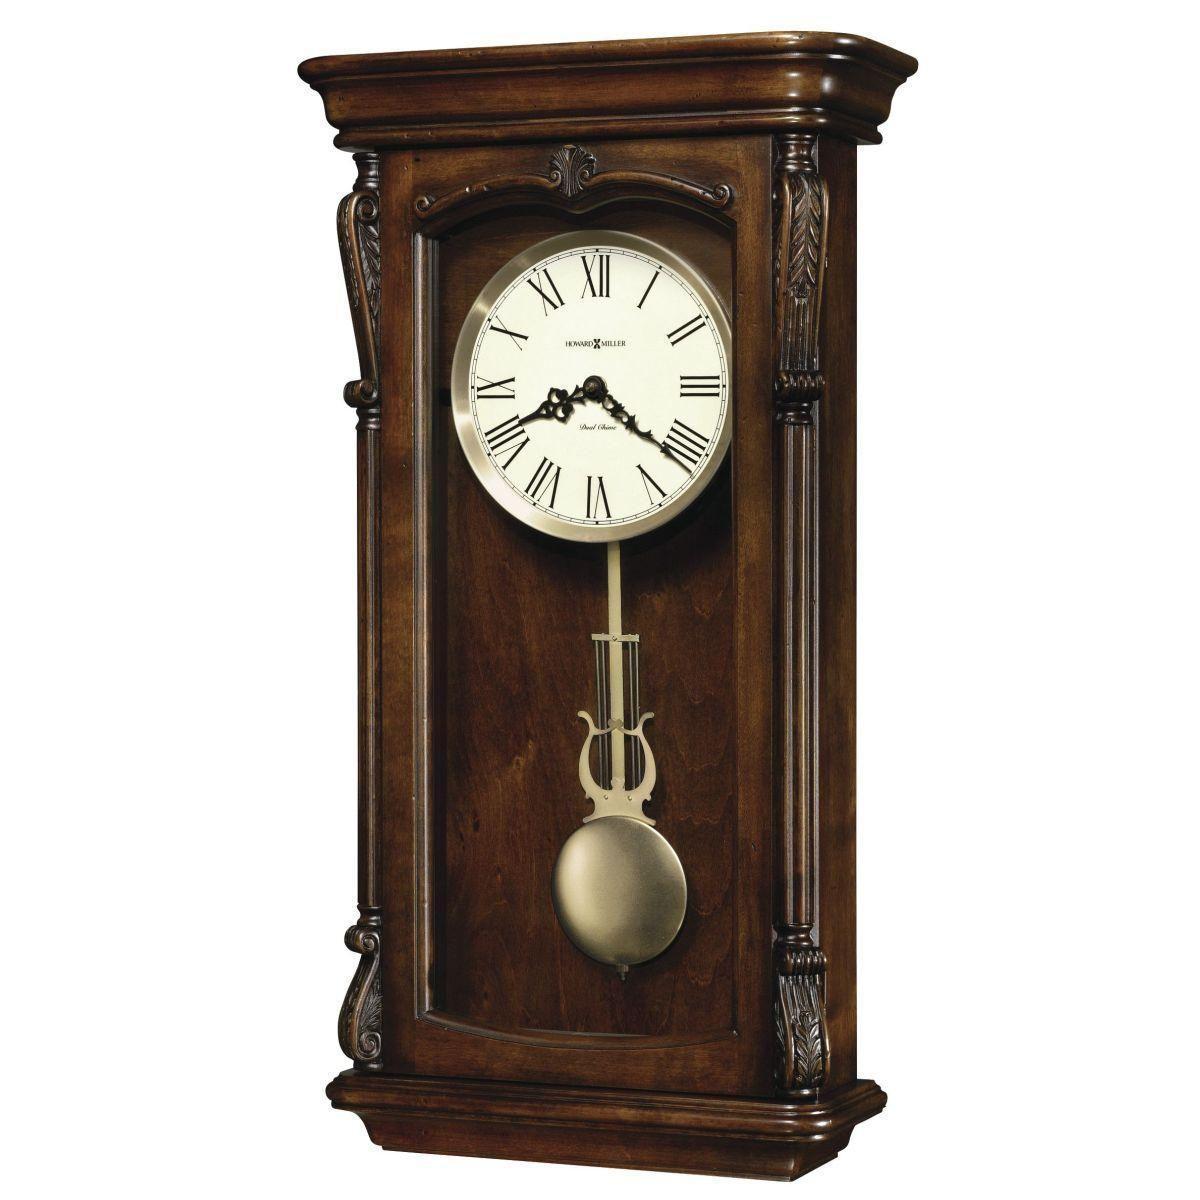 Настенные часы с маятником недорого. Howard Miller настенные часы 620-184 Rothwell. Часы Howard Miller с маятником. Напольные часы Howard Miller.